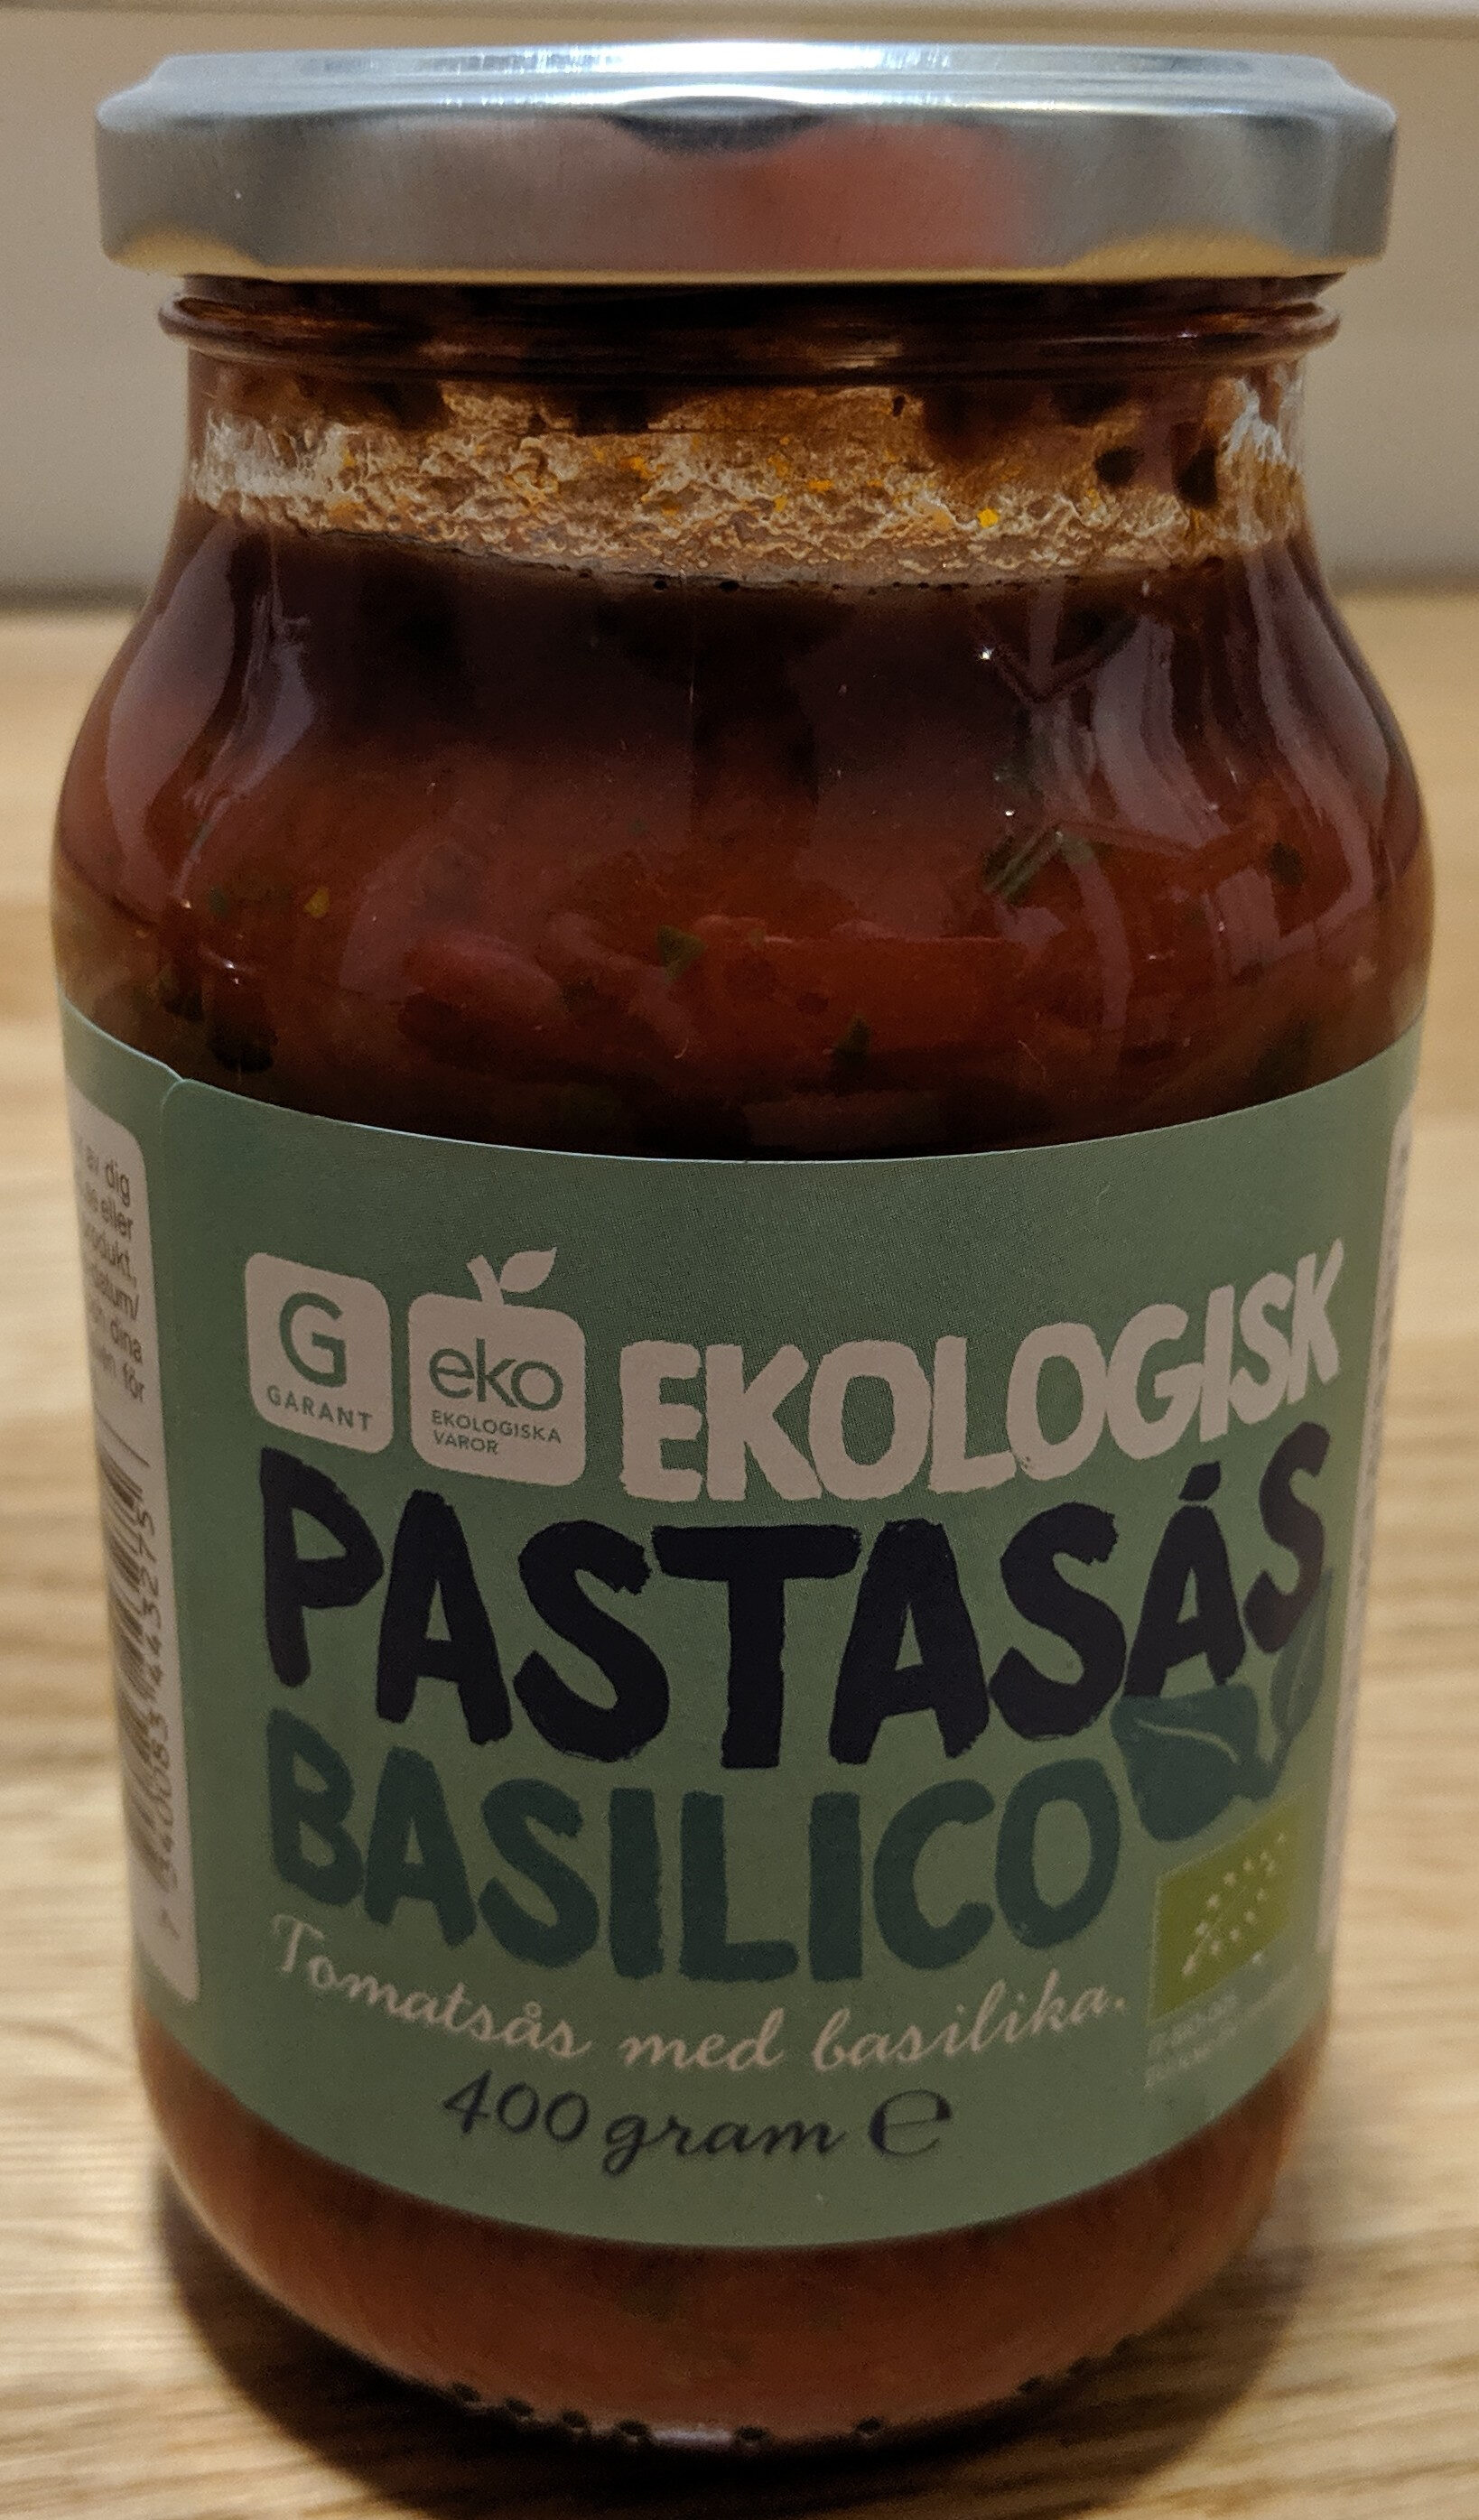 Ekologisk Pastasås Basilico - Produkt - sv